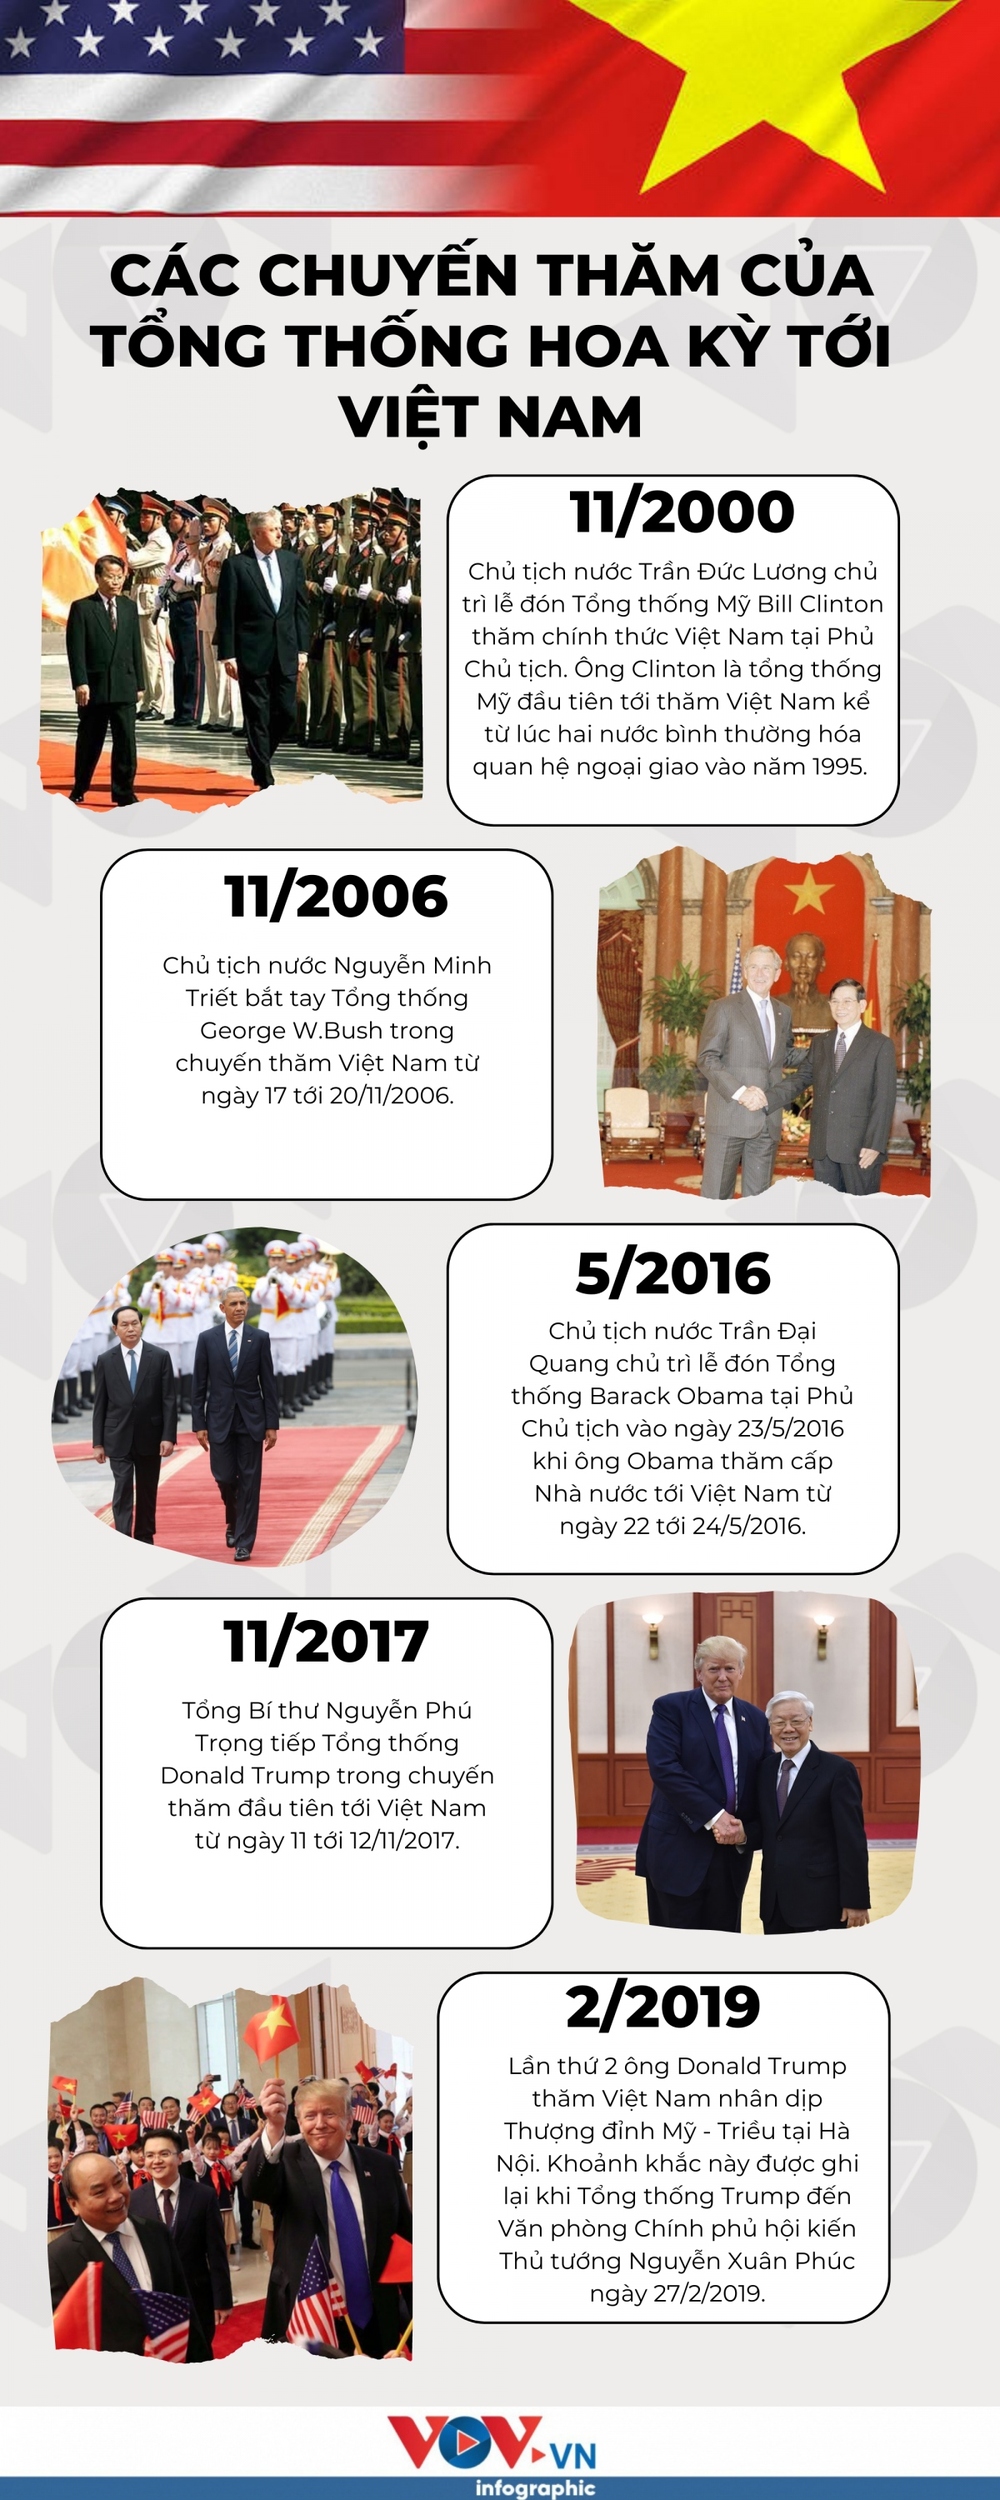 Nhìn lại các chuyến thăm của Tổng thống Hoa Kỳ tới Việt Nam - Ảnh 1.